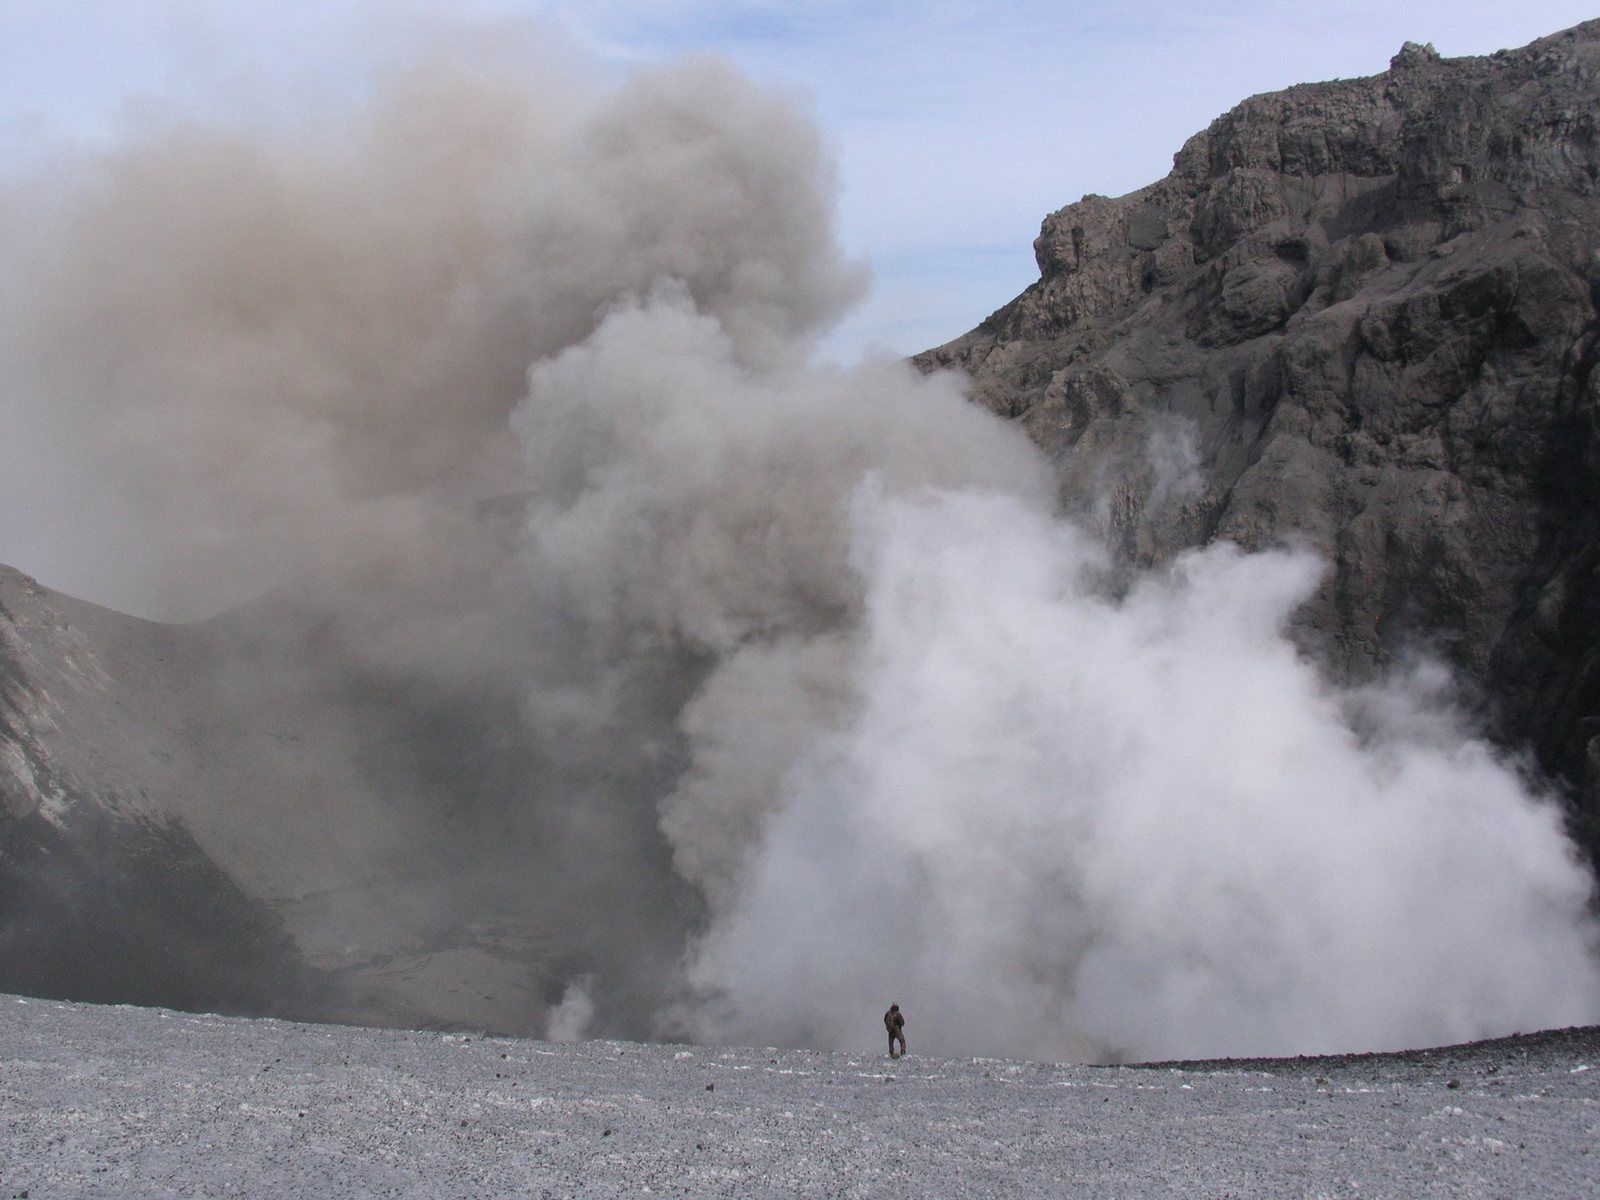 Copahue - l'échelle du cratère actif est donné par le personnage au centre - photo 14.10.2014 /  LESVA - Laboratorio de Estudio y Seguimiento de Volcanes Activos